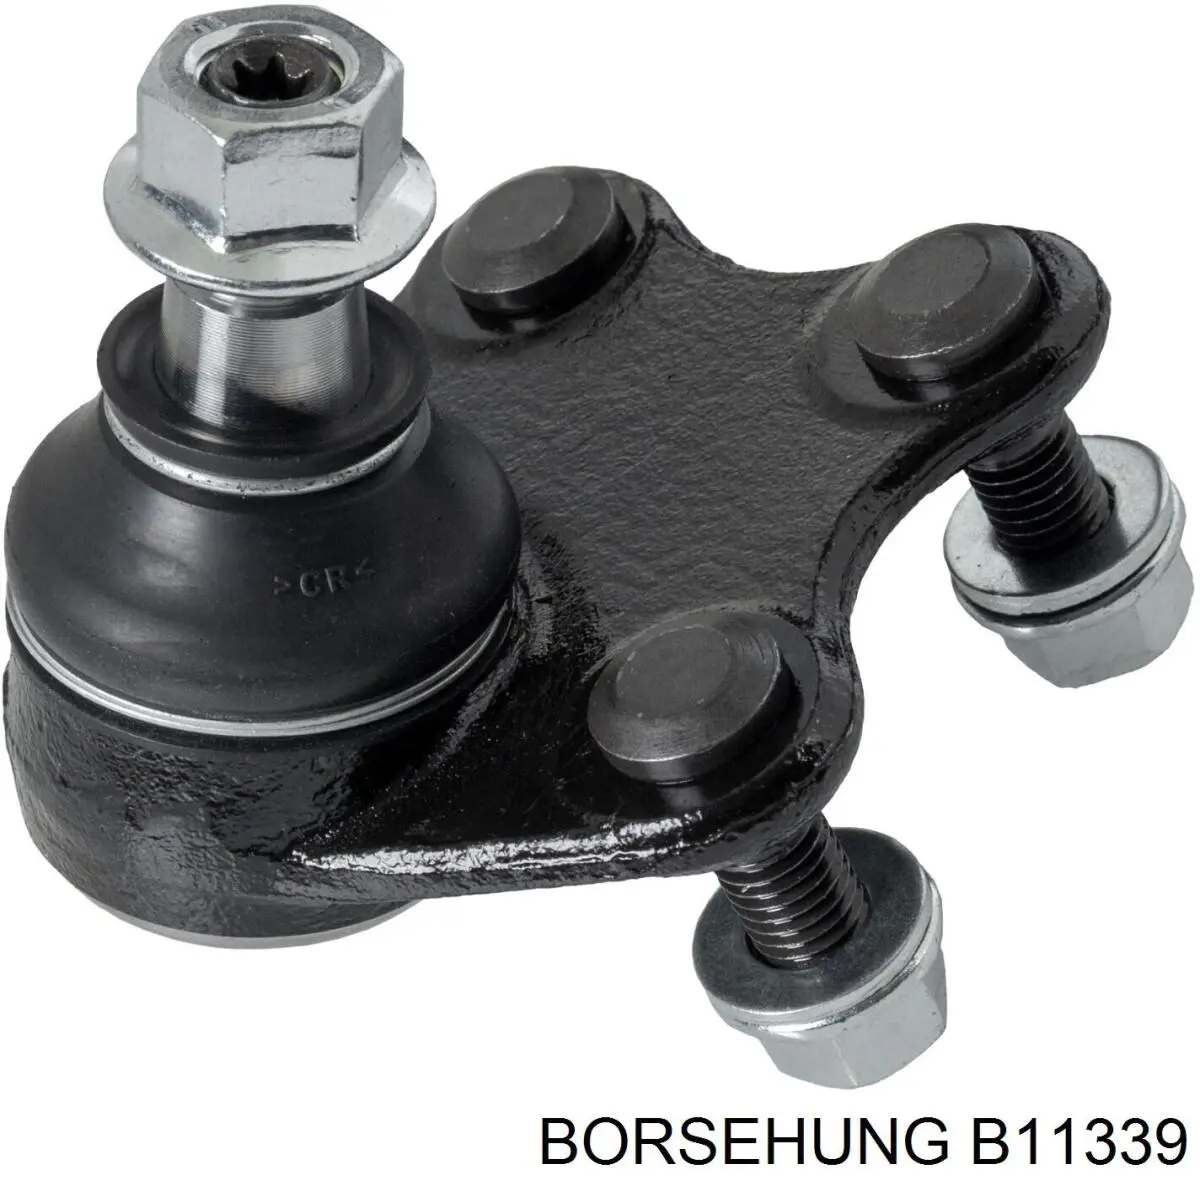 B11339 Borsehung rótula de suspensión inferior derecha